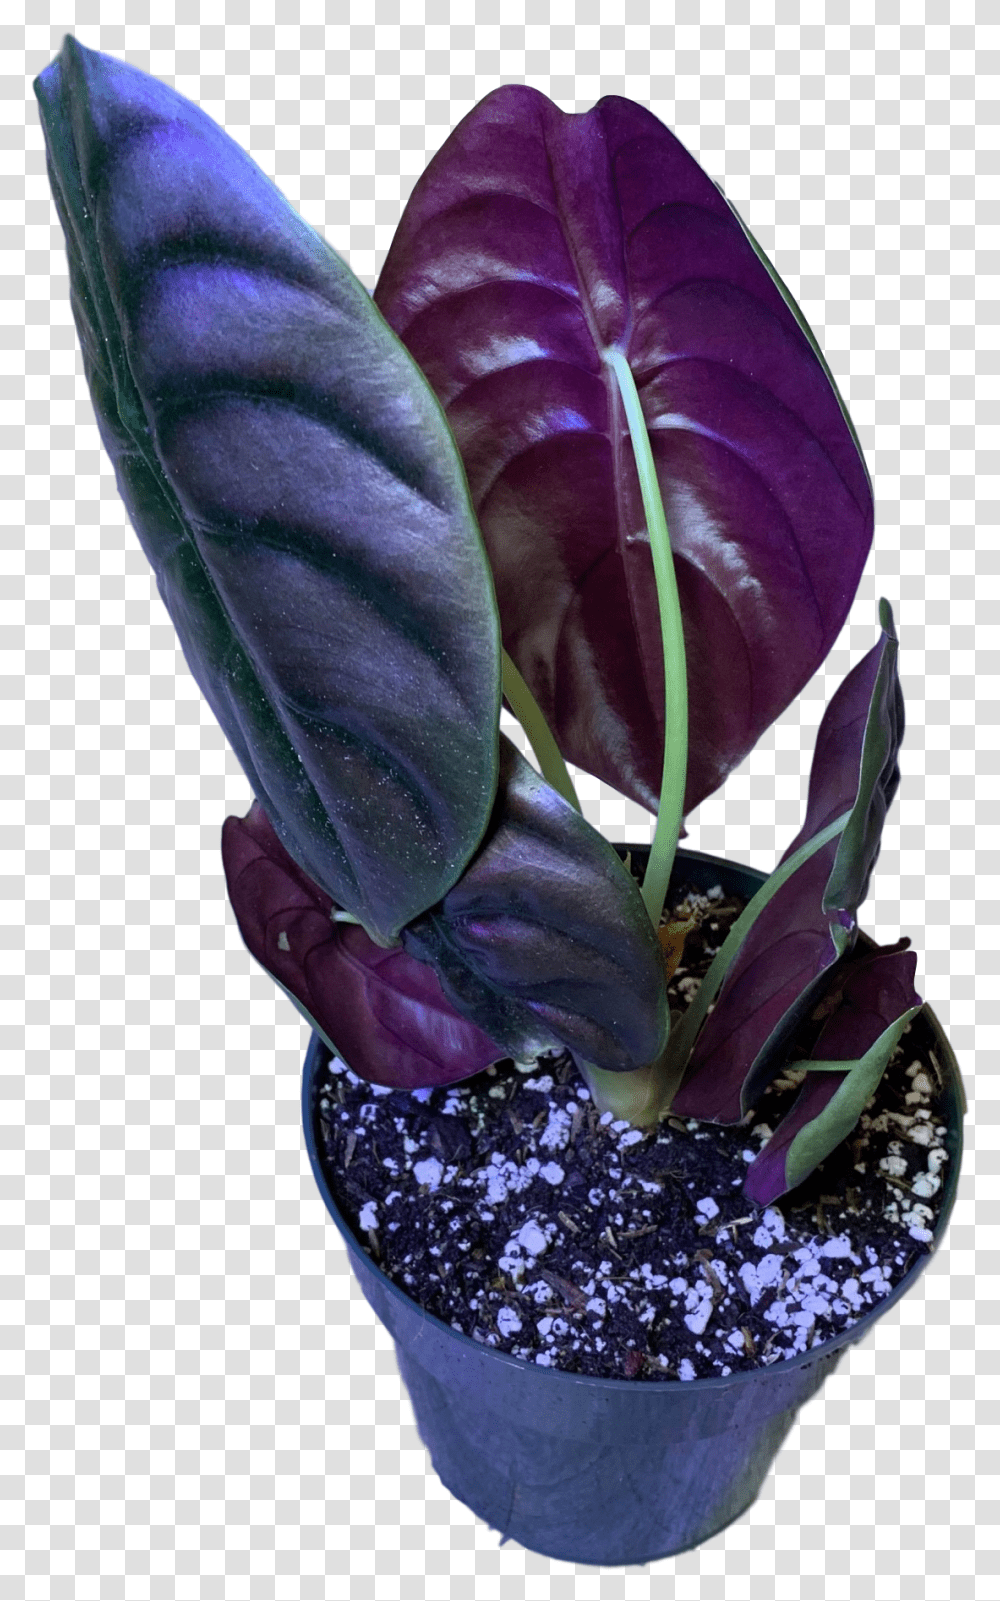 African Violets Image Plants, Flower, Blossom, Flower Arrangement, Vase Transparent Png